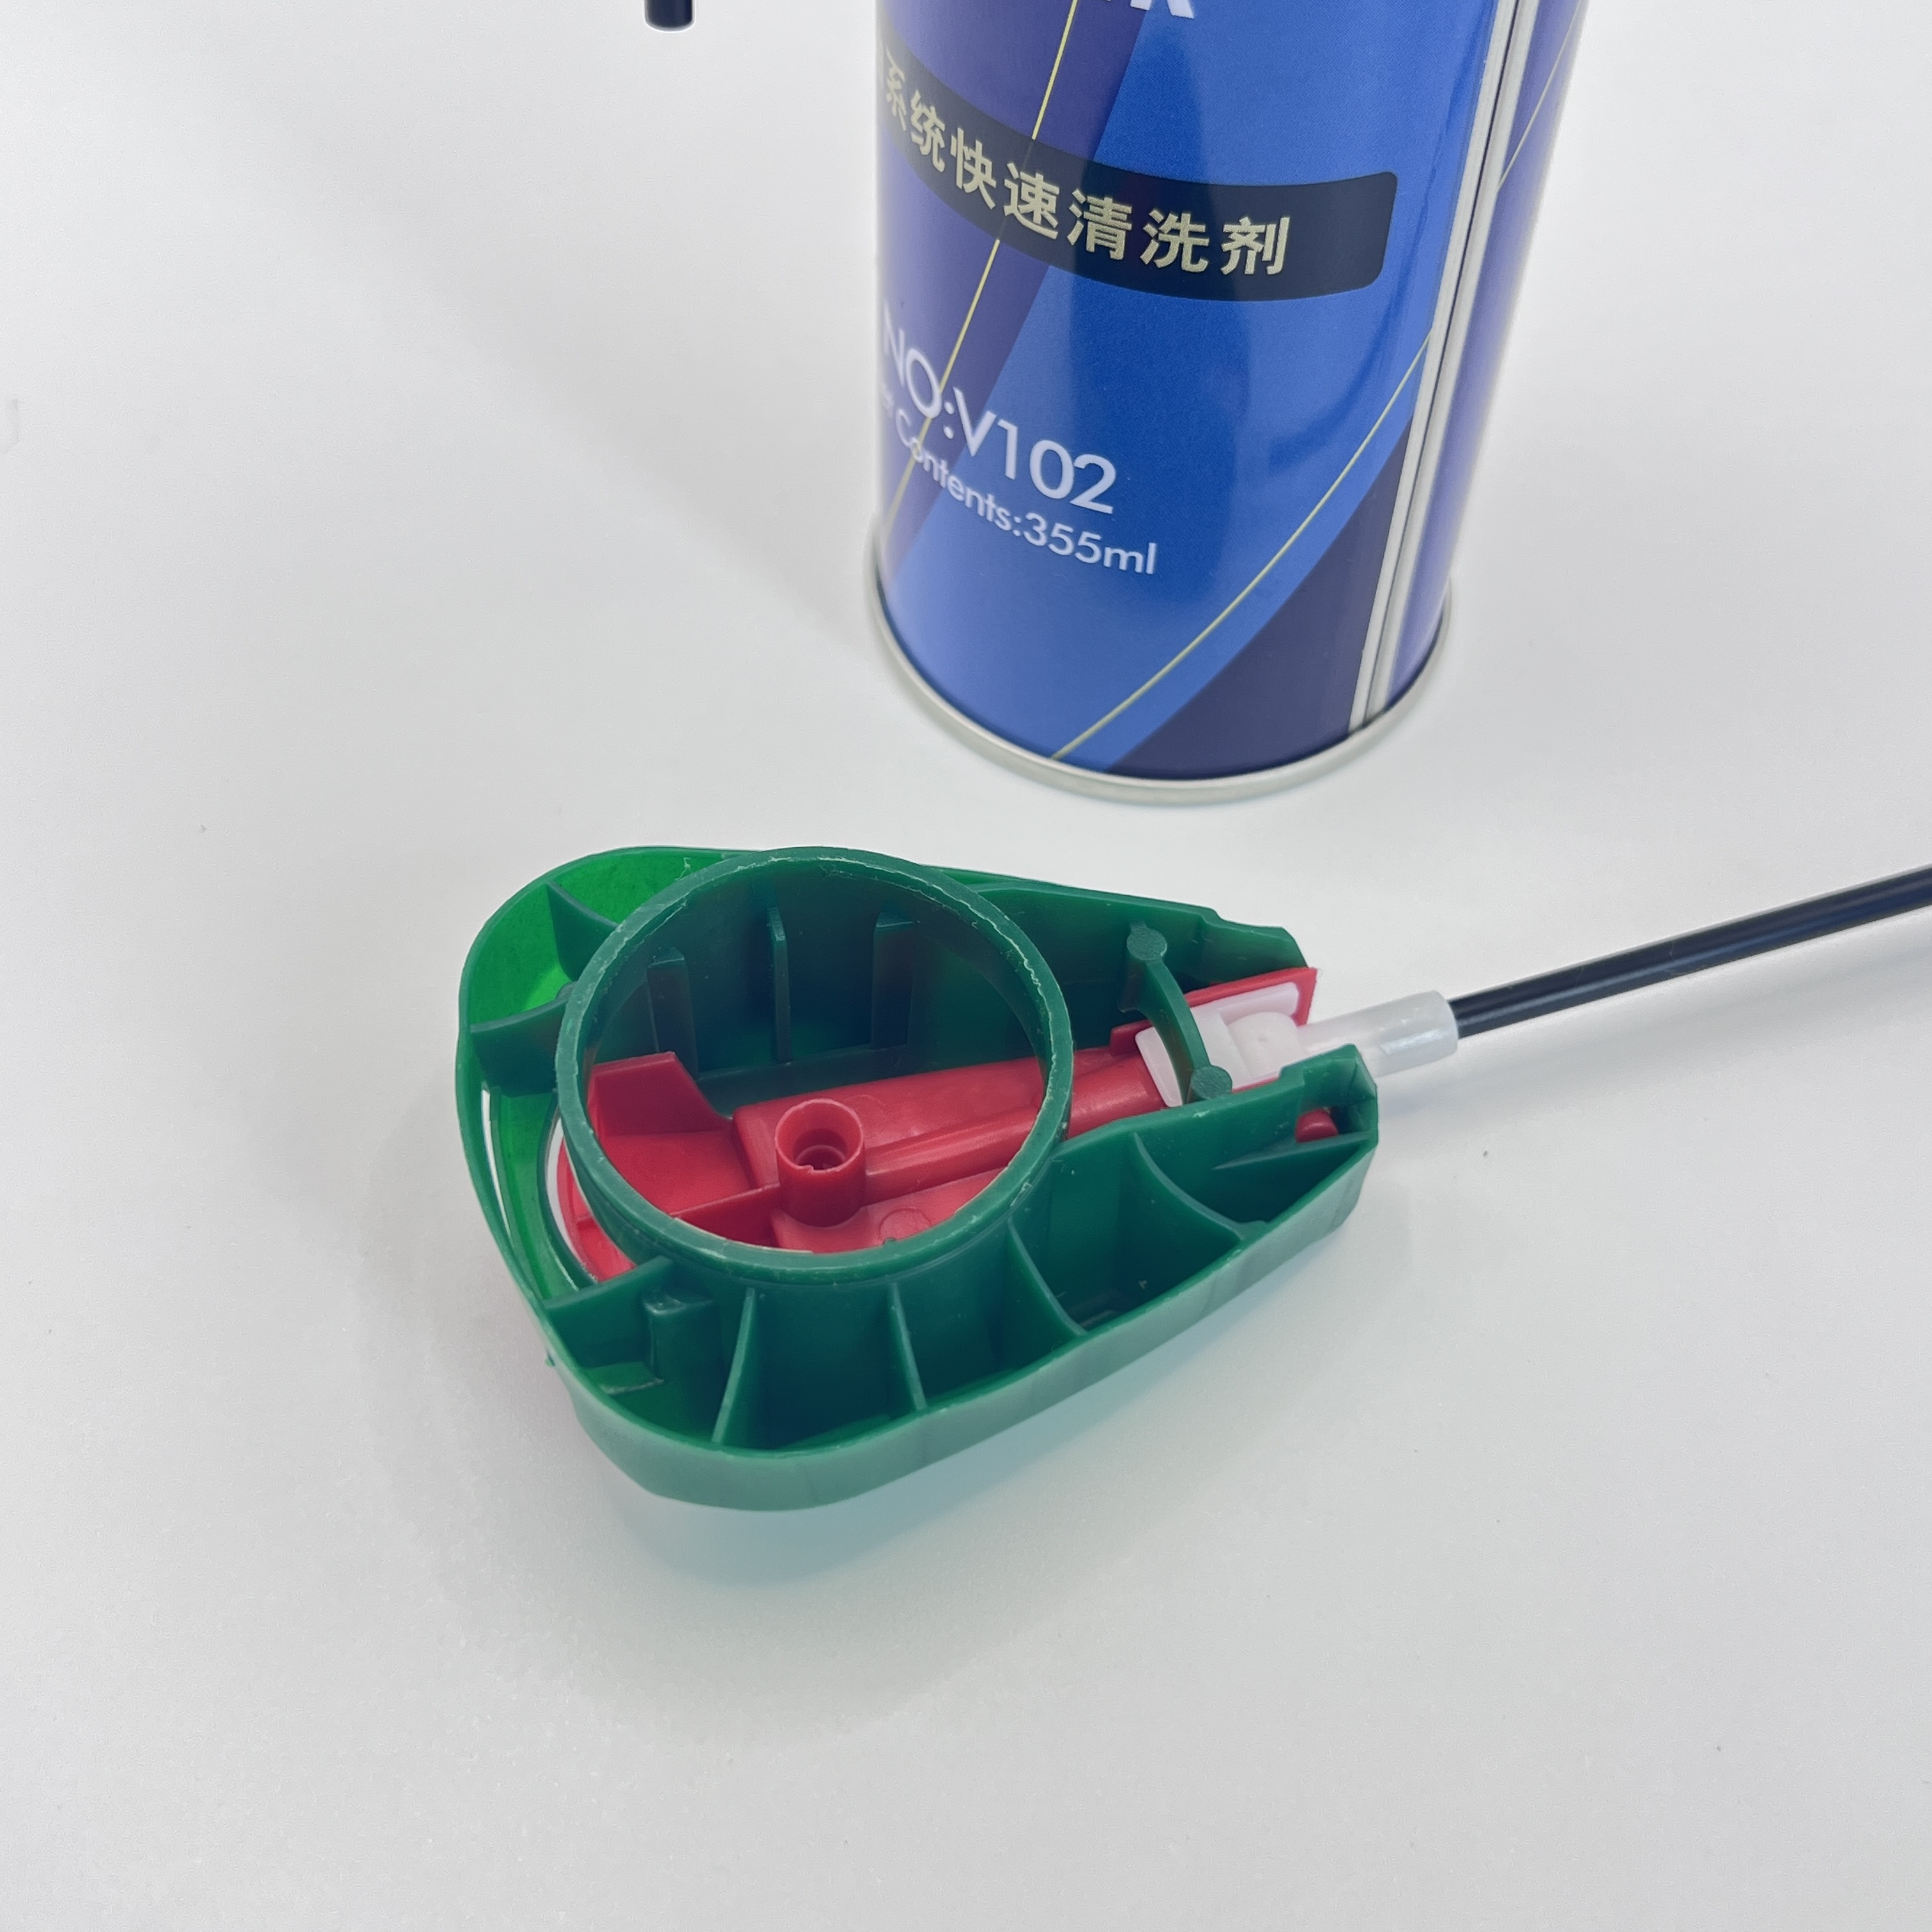 정밀 에어로졸 스프레이 밸브 - 미세 스프레이 작업을 위한 정확한 솔루션